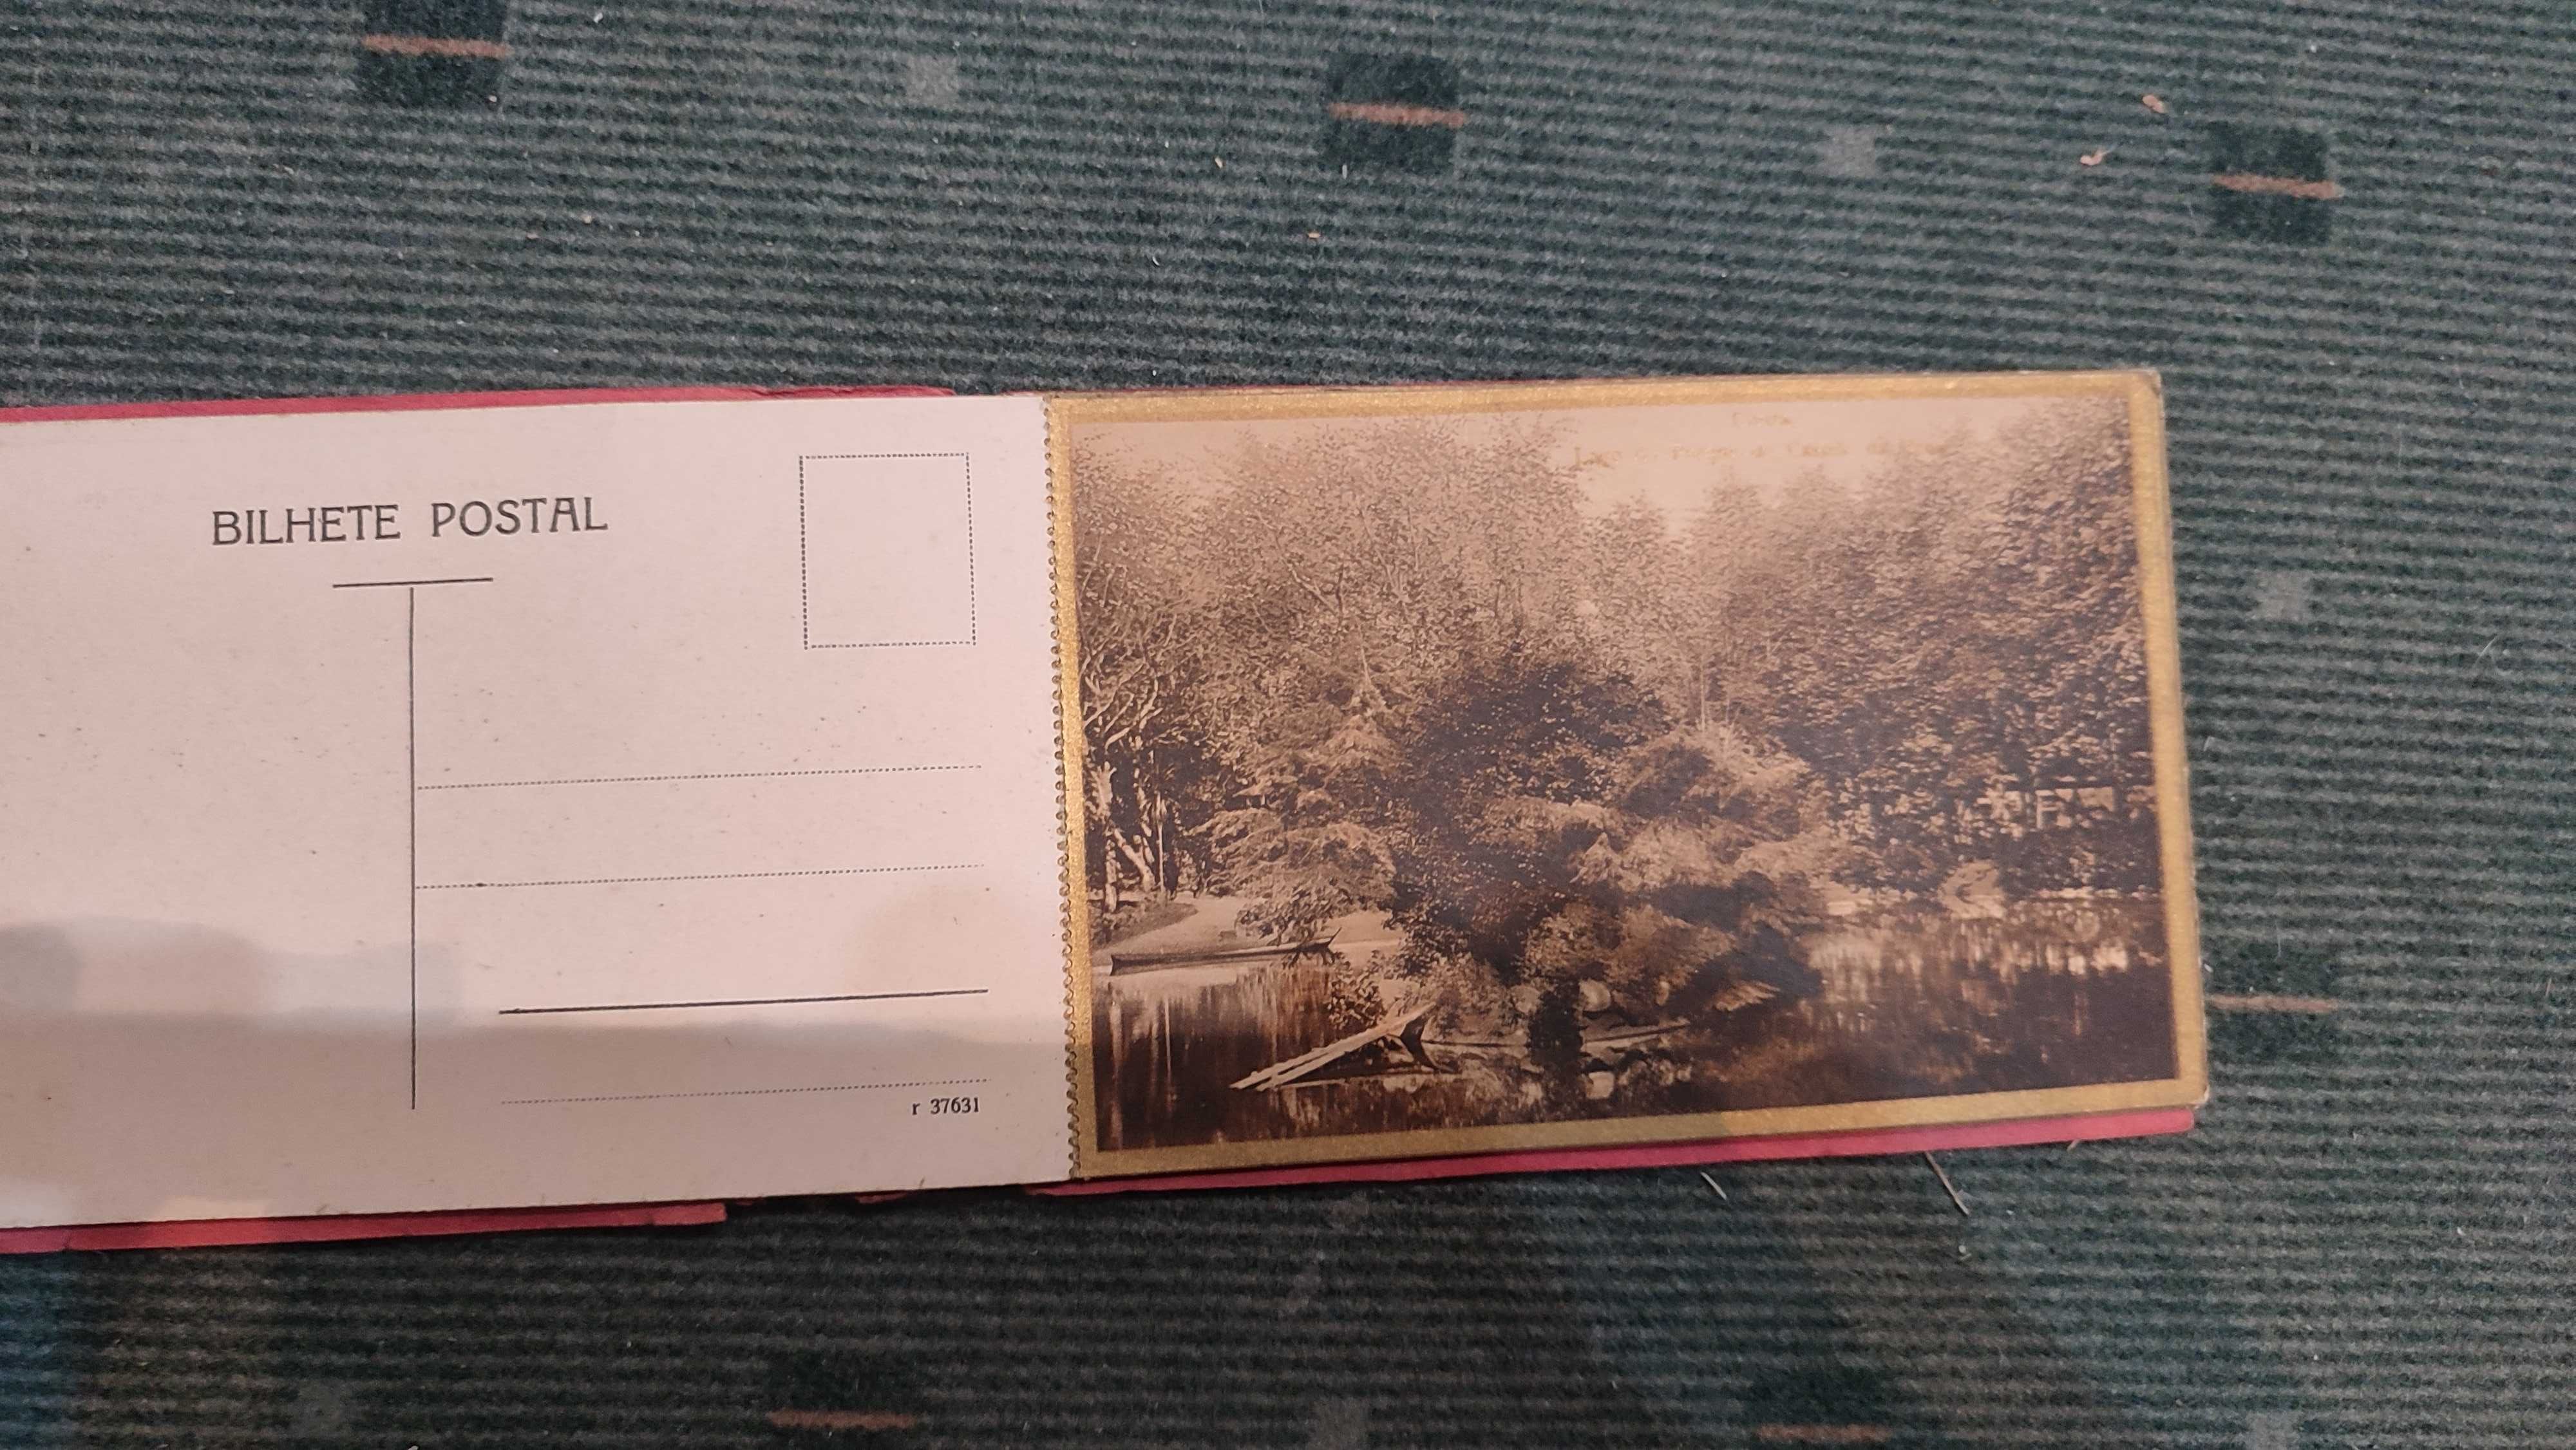 16 postais antigos de Sintra